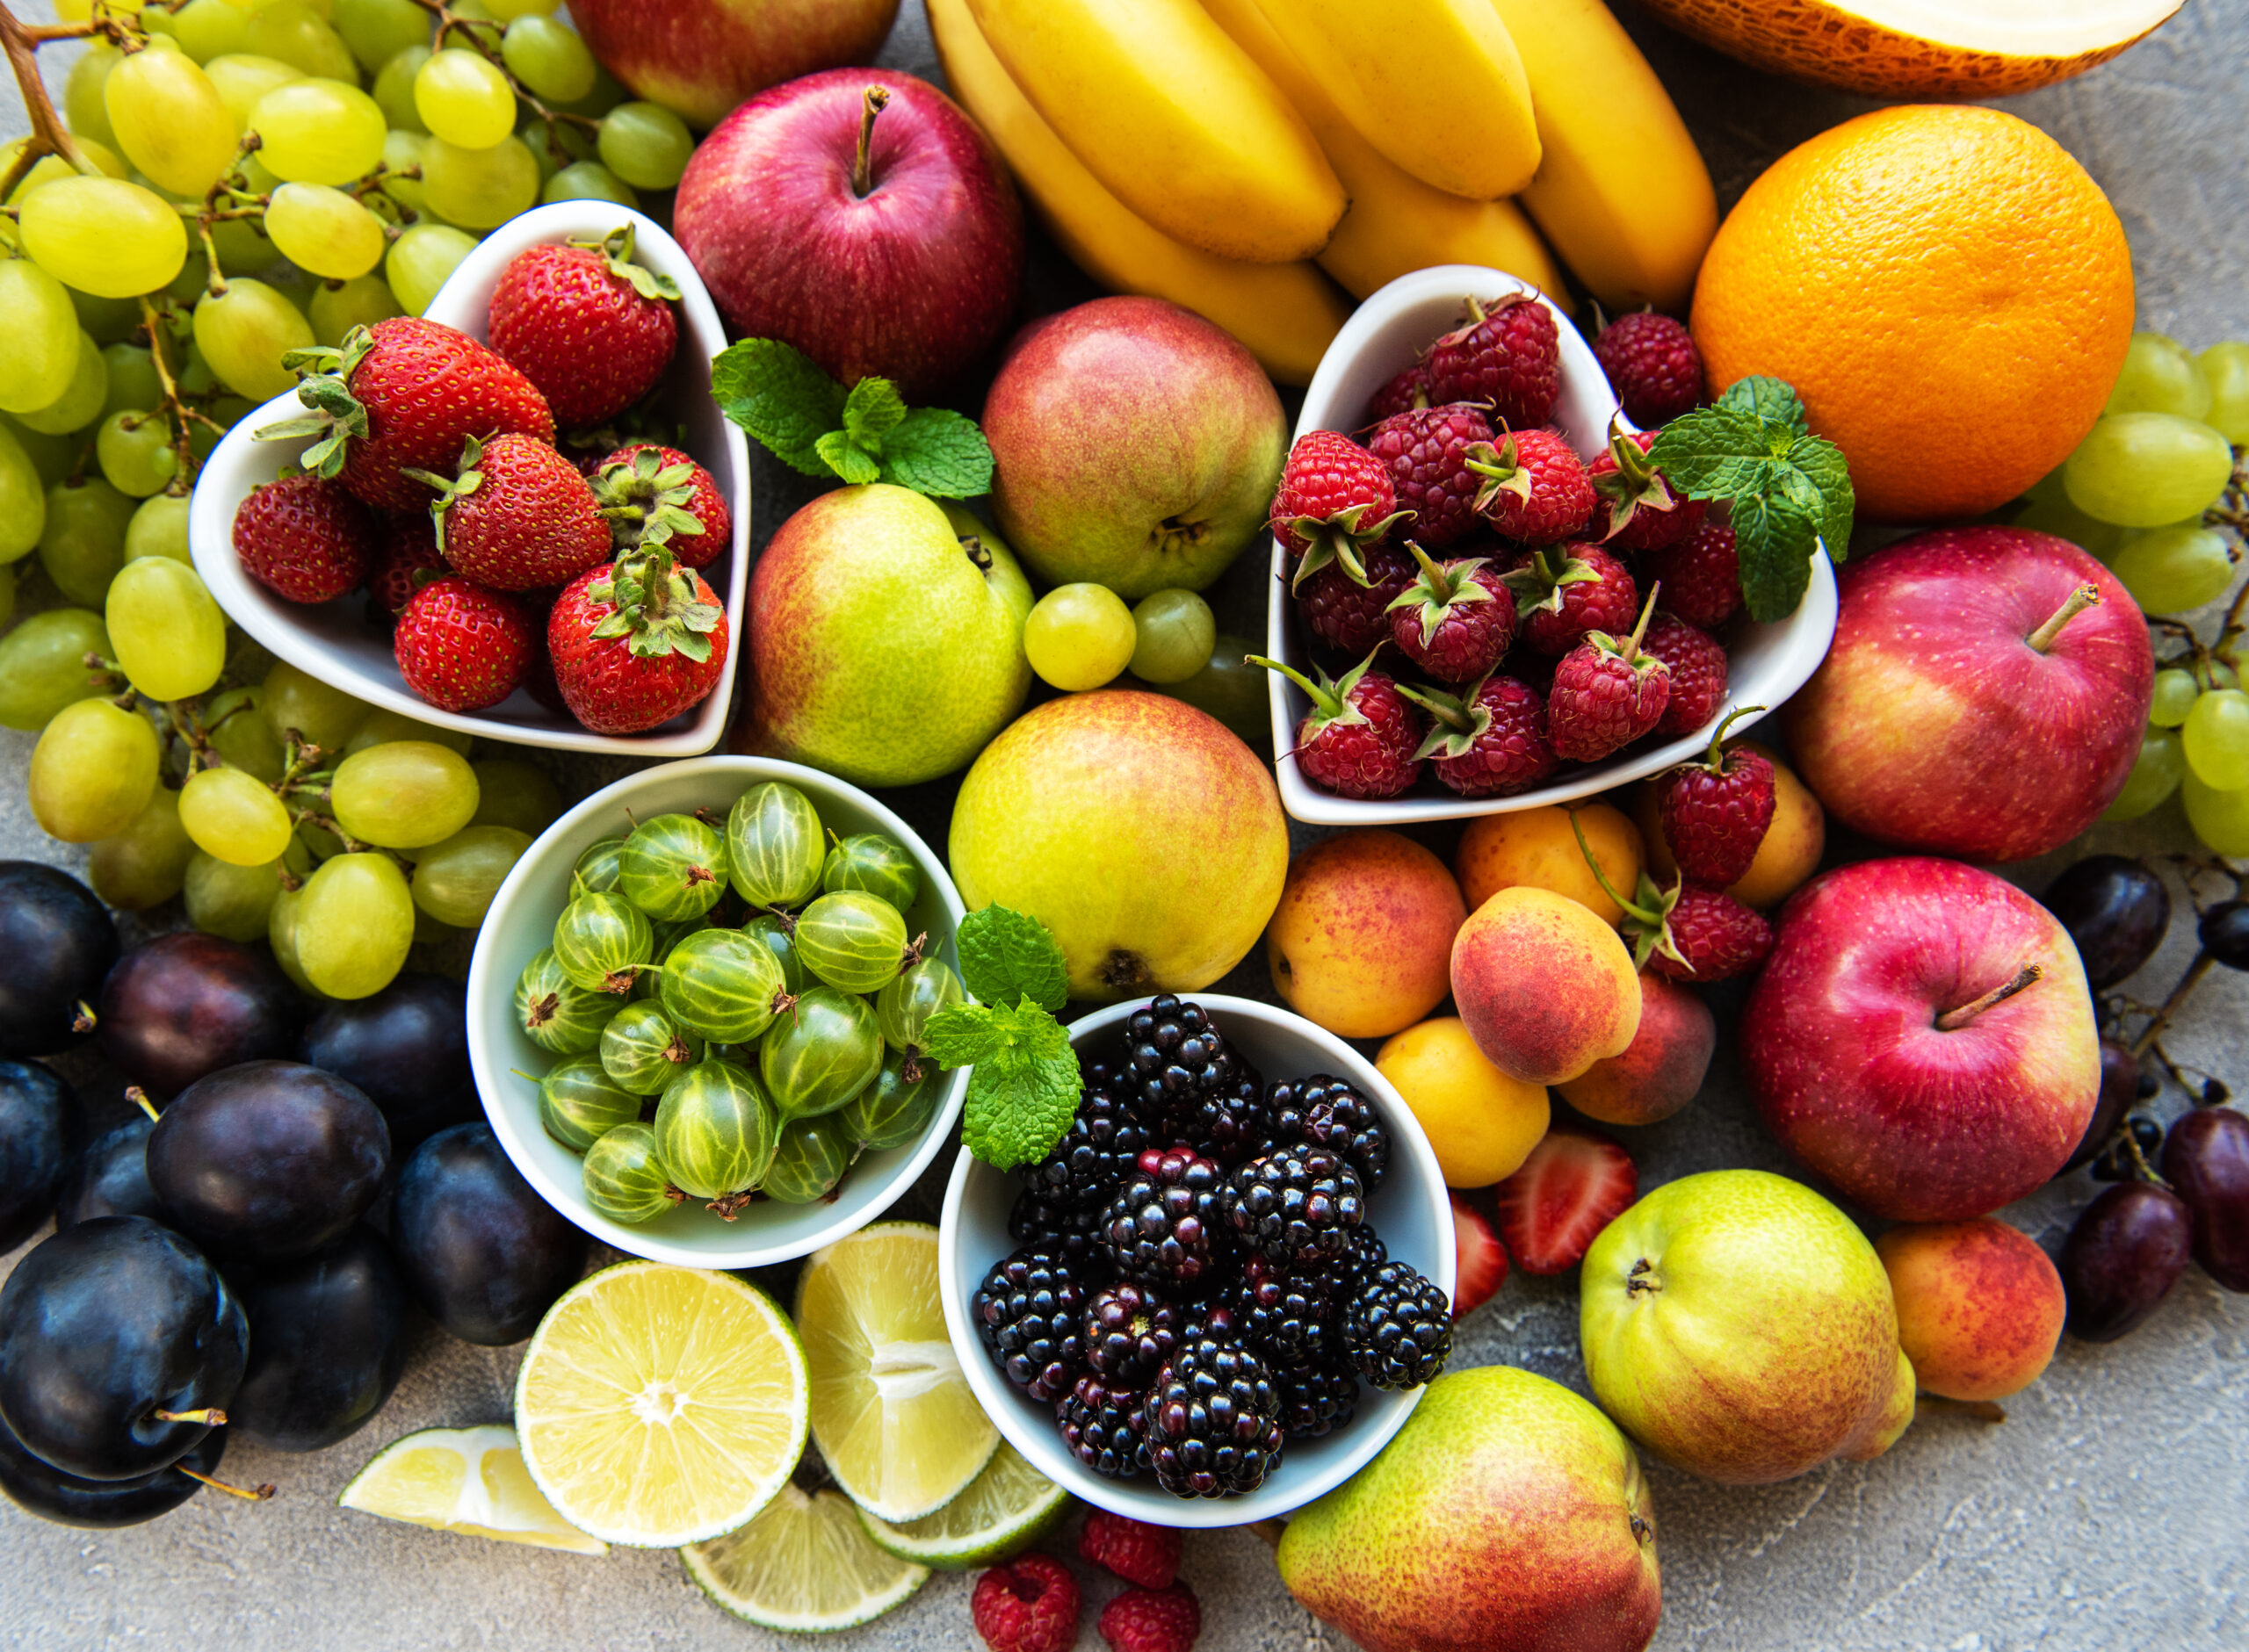 Na tym kolorowym obrazku możemy podziwiać różnorodne owoce, które okazują się być nie tylko smaczne, ale także korzystne dla naszego układu nerwowego. Widzimy tu świeże owoce takie jak jagody, maliny i awokado, bogate w przeciwutleniacze i zdrowe tłuszcze, które wspierają zdrowie mózgu i układu nerwowego. Wzbogacone witaminami owoce cytrusowe, takie jak pomarańcze i grejpfruty, obecne na tym obrazku, dostarczają składników odżywczych niezbędnych do utrzymania optymalnej funkcji naszego układu nerwowego.